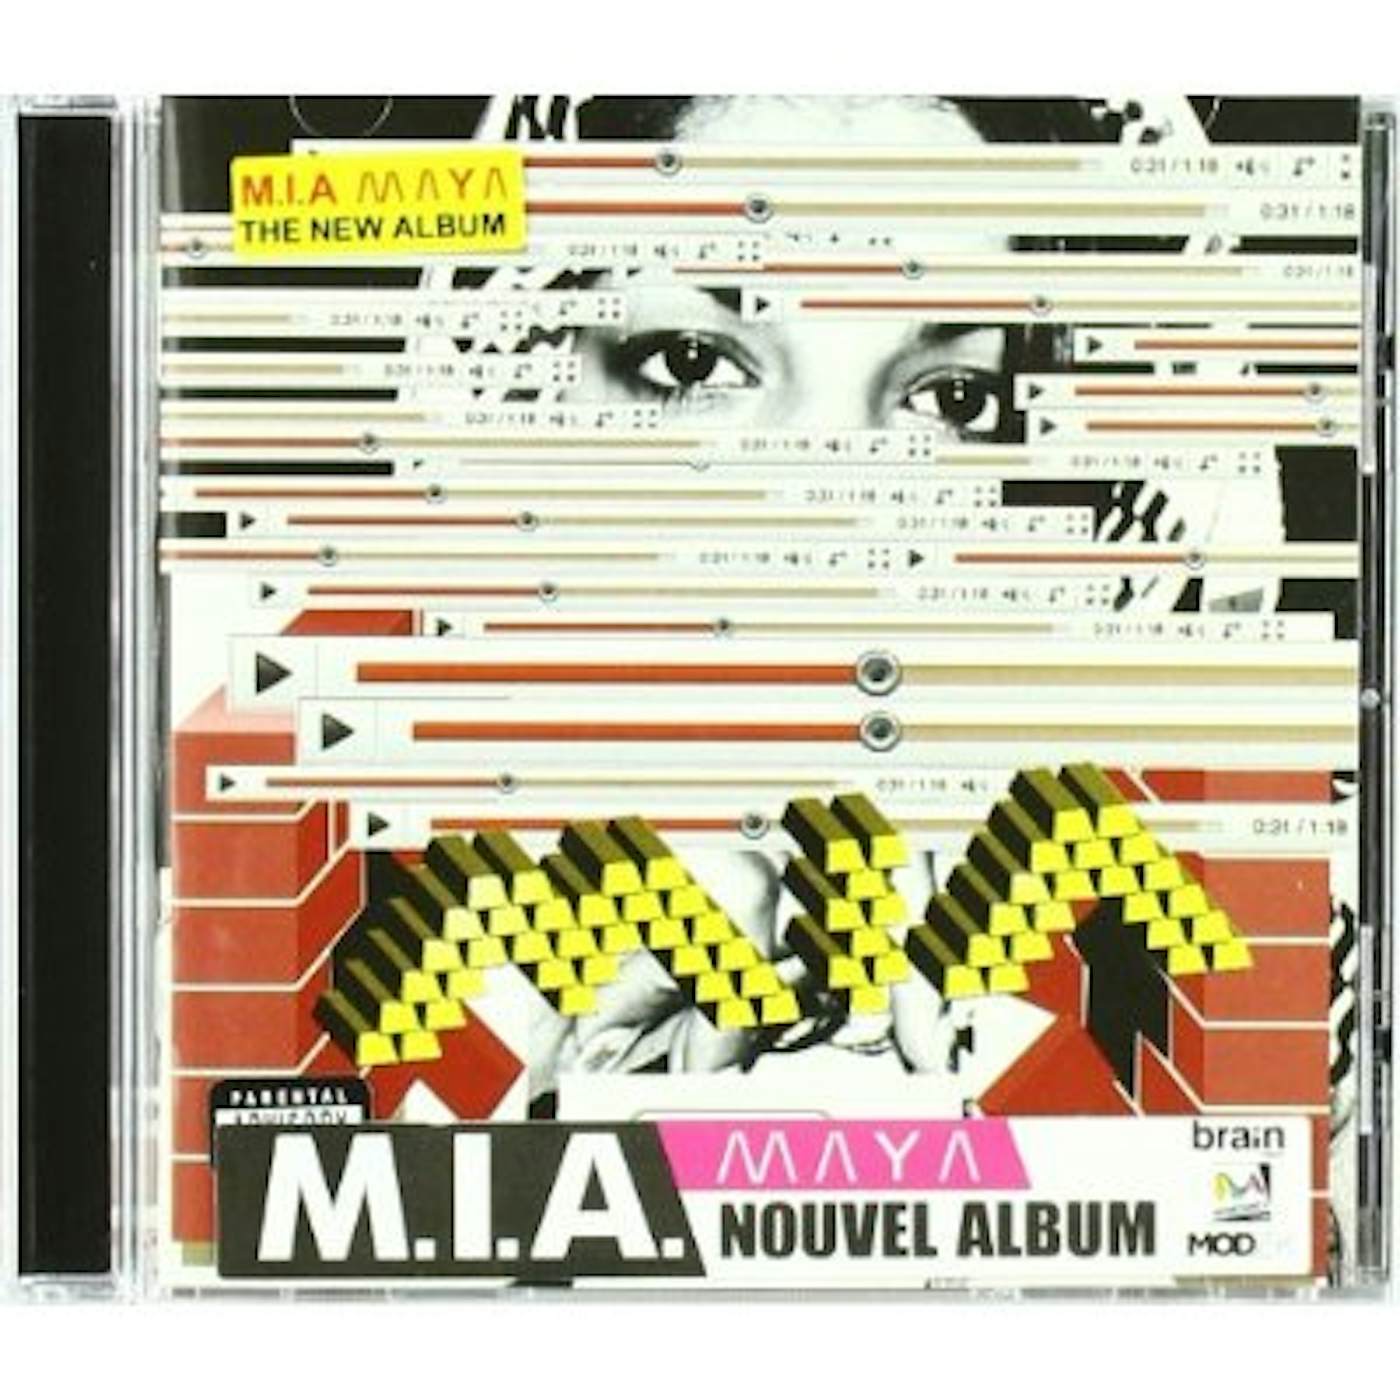 M.I.A. MAYA CD